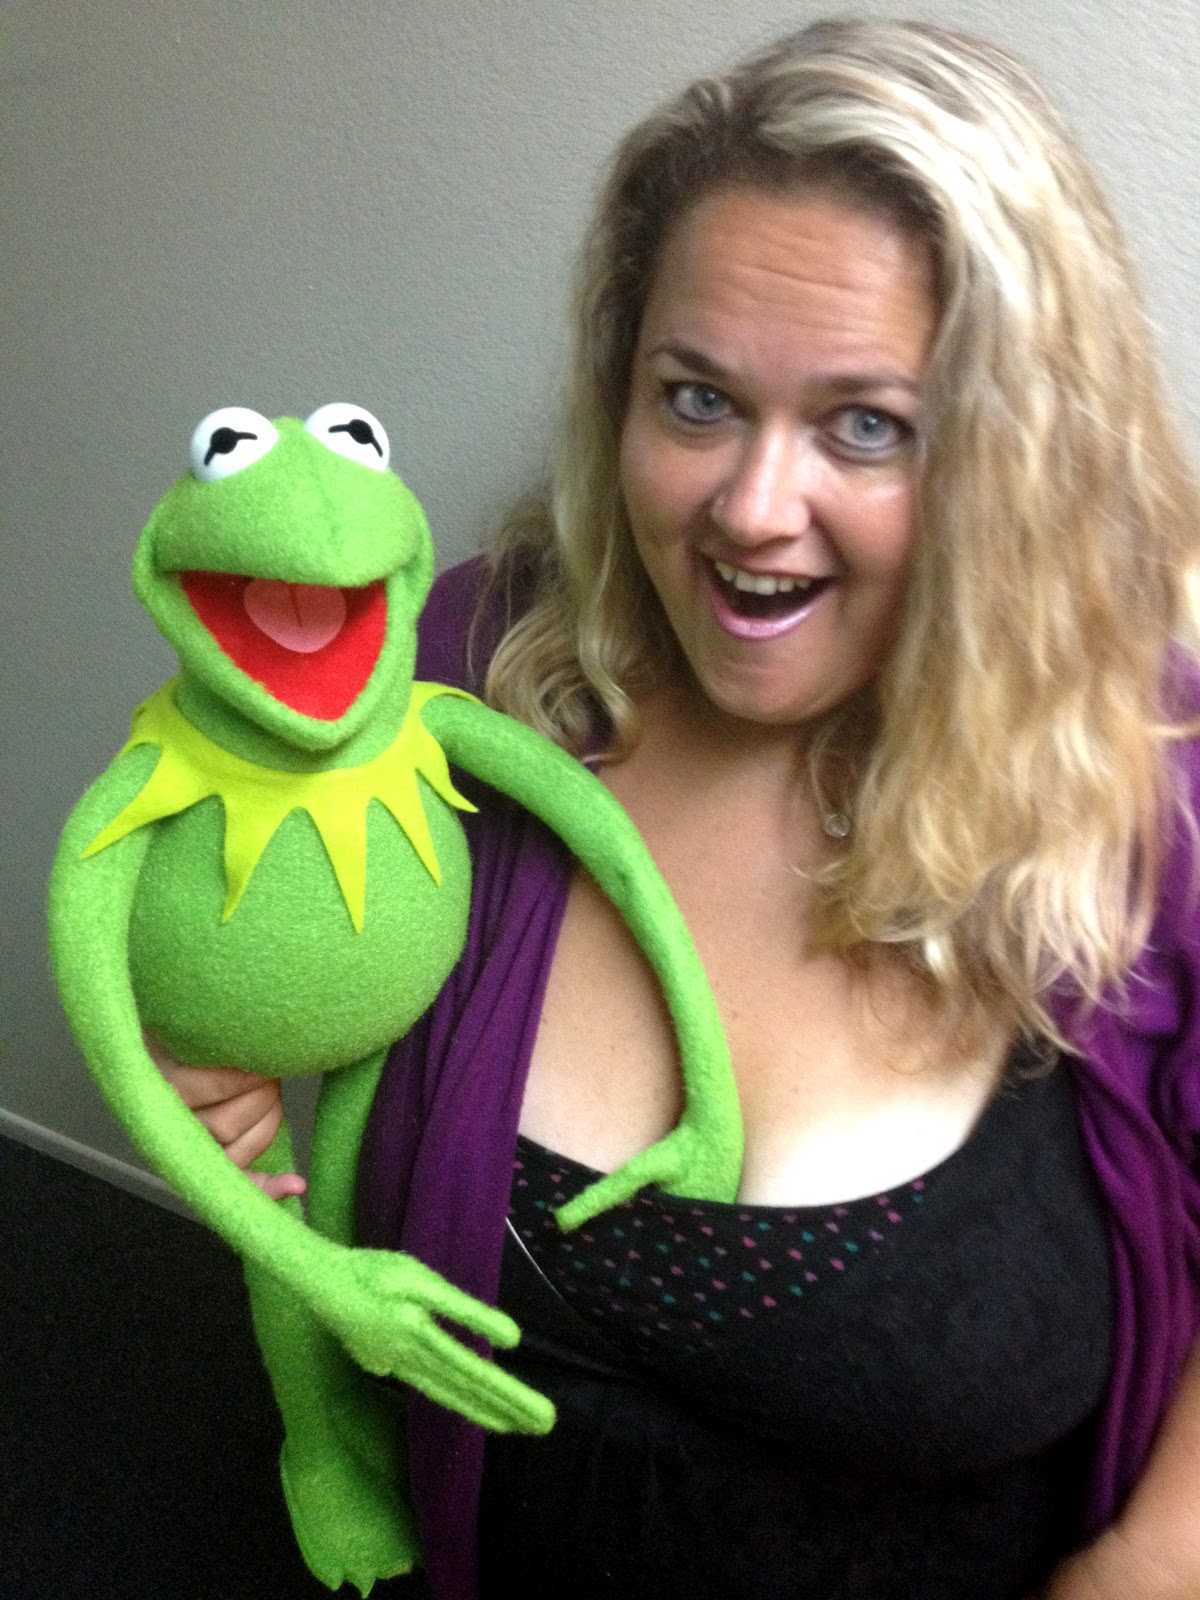 Fun with Kermit.